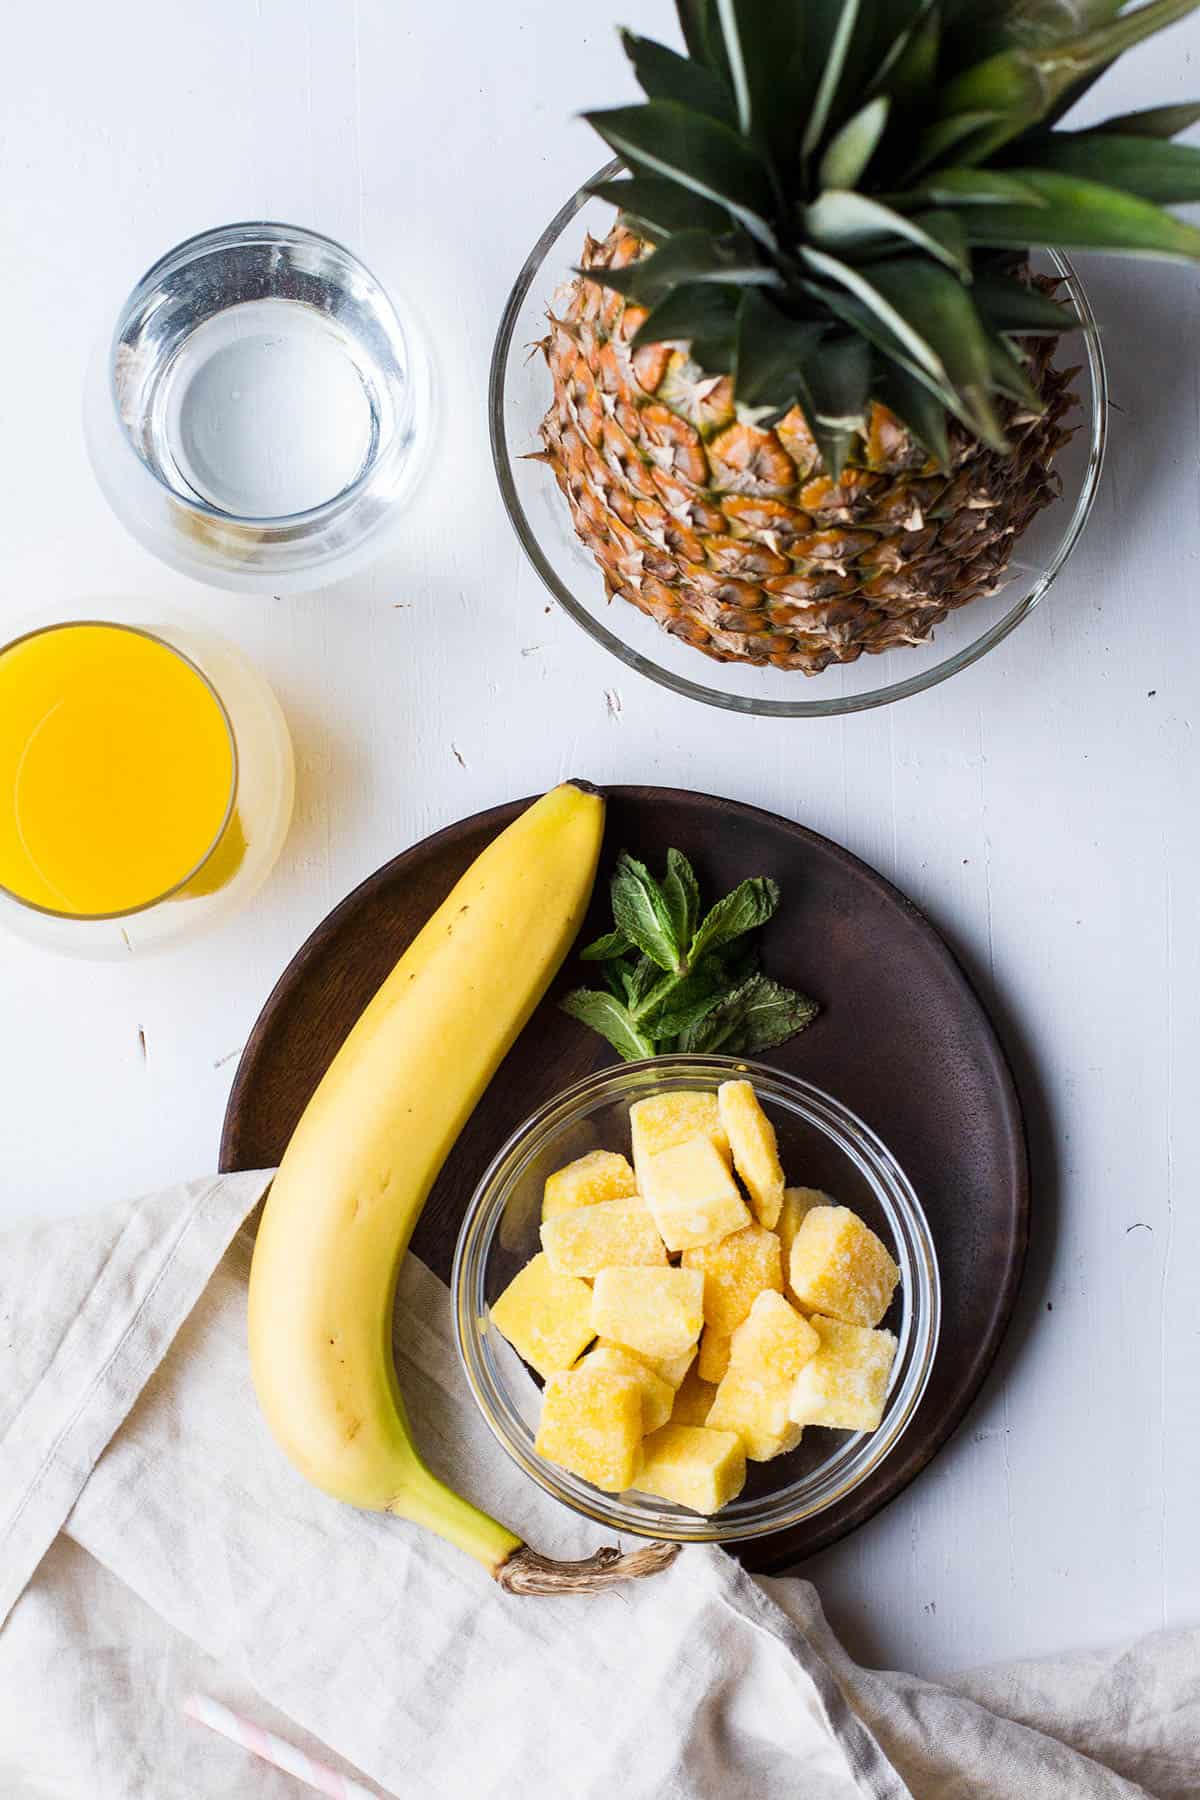 Ingredients to make mango pineapple smoothie.